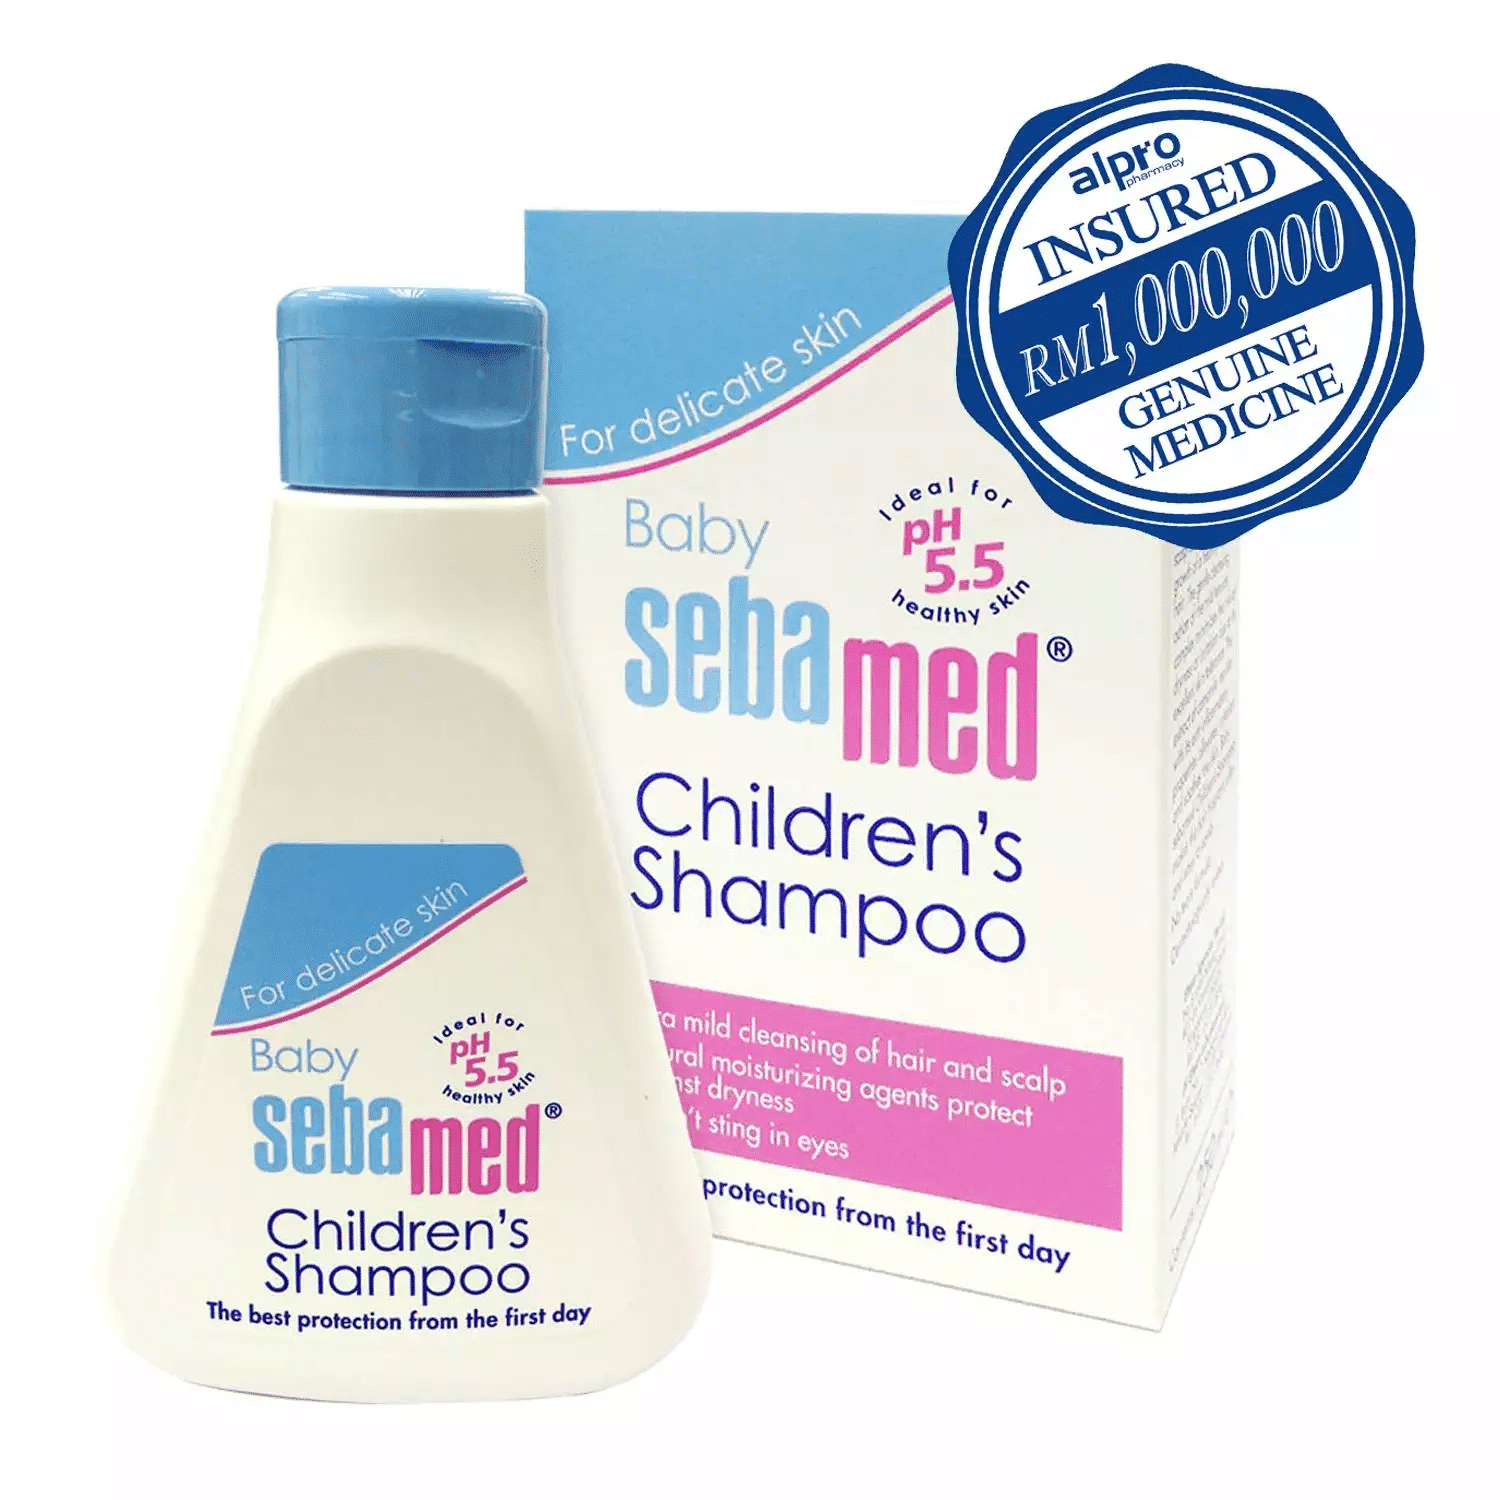 Baby Sebamed Children’s Shampoo